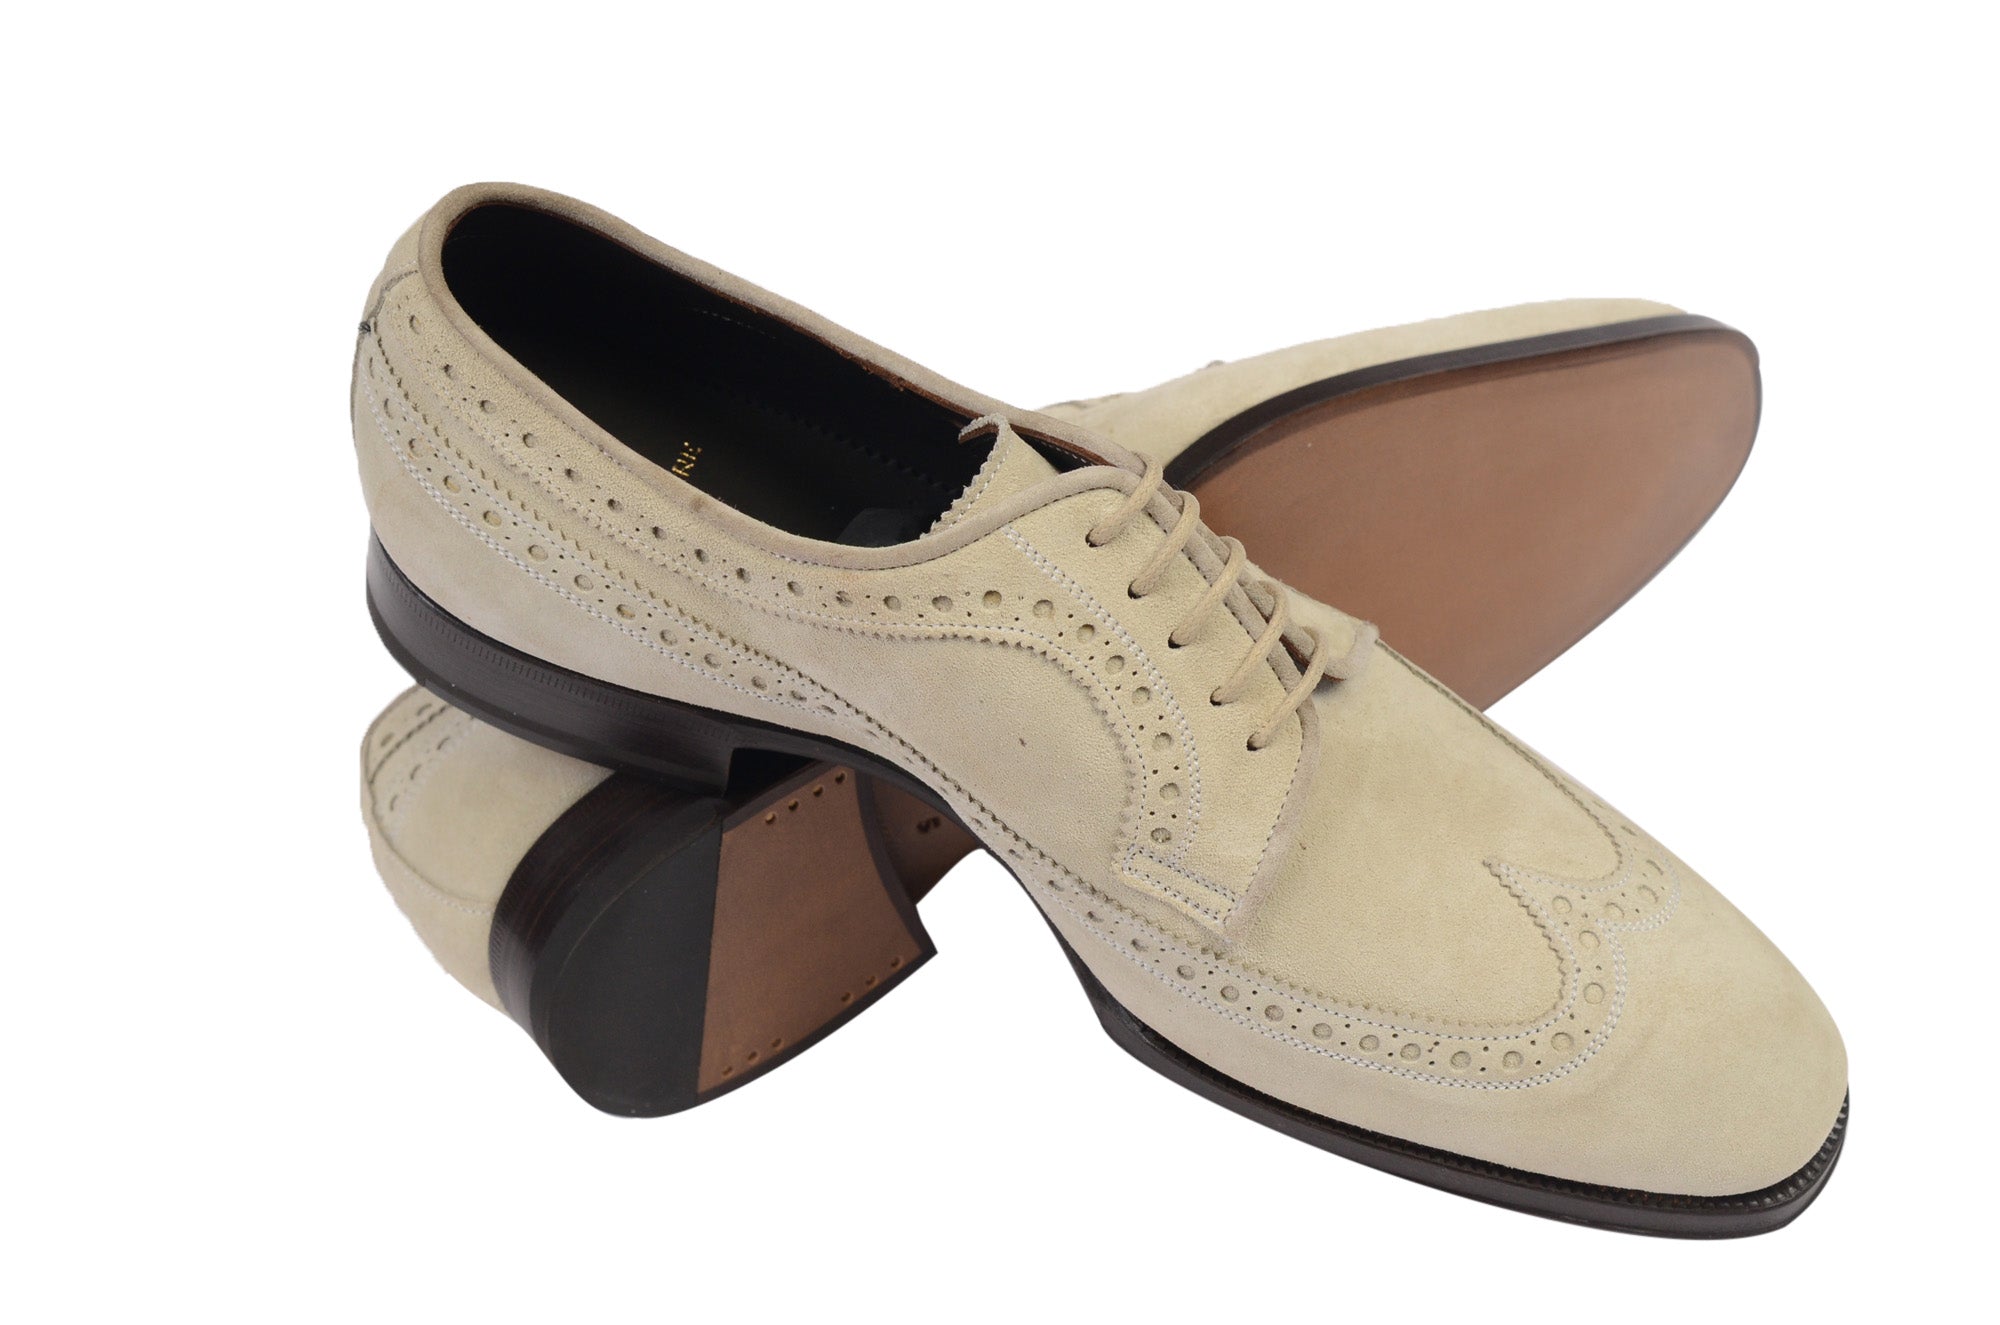 MAX VERRE Napoli Tan Beige Brogue Wingtip Suede Shoes 6.5 NEW US 7.5 8 MAX VERRE